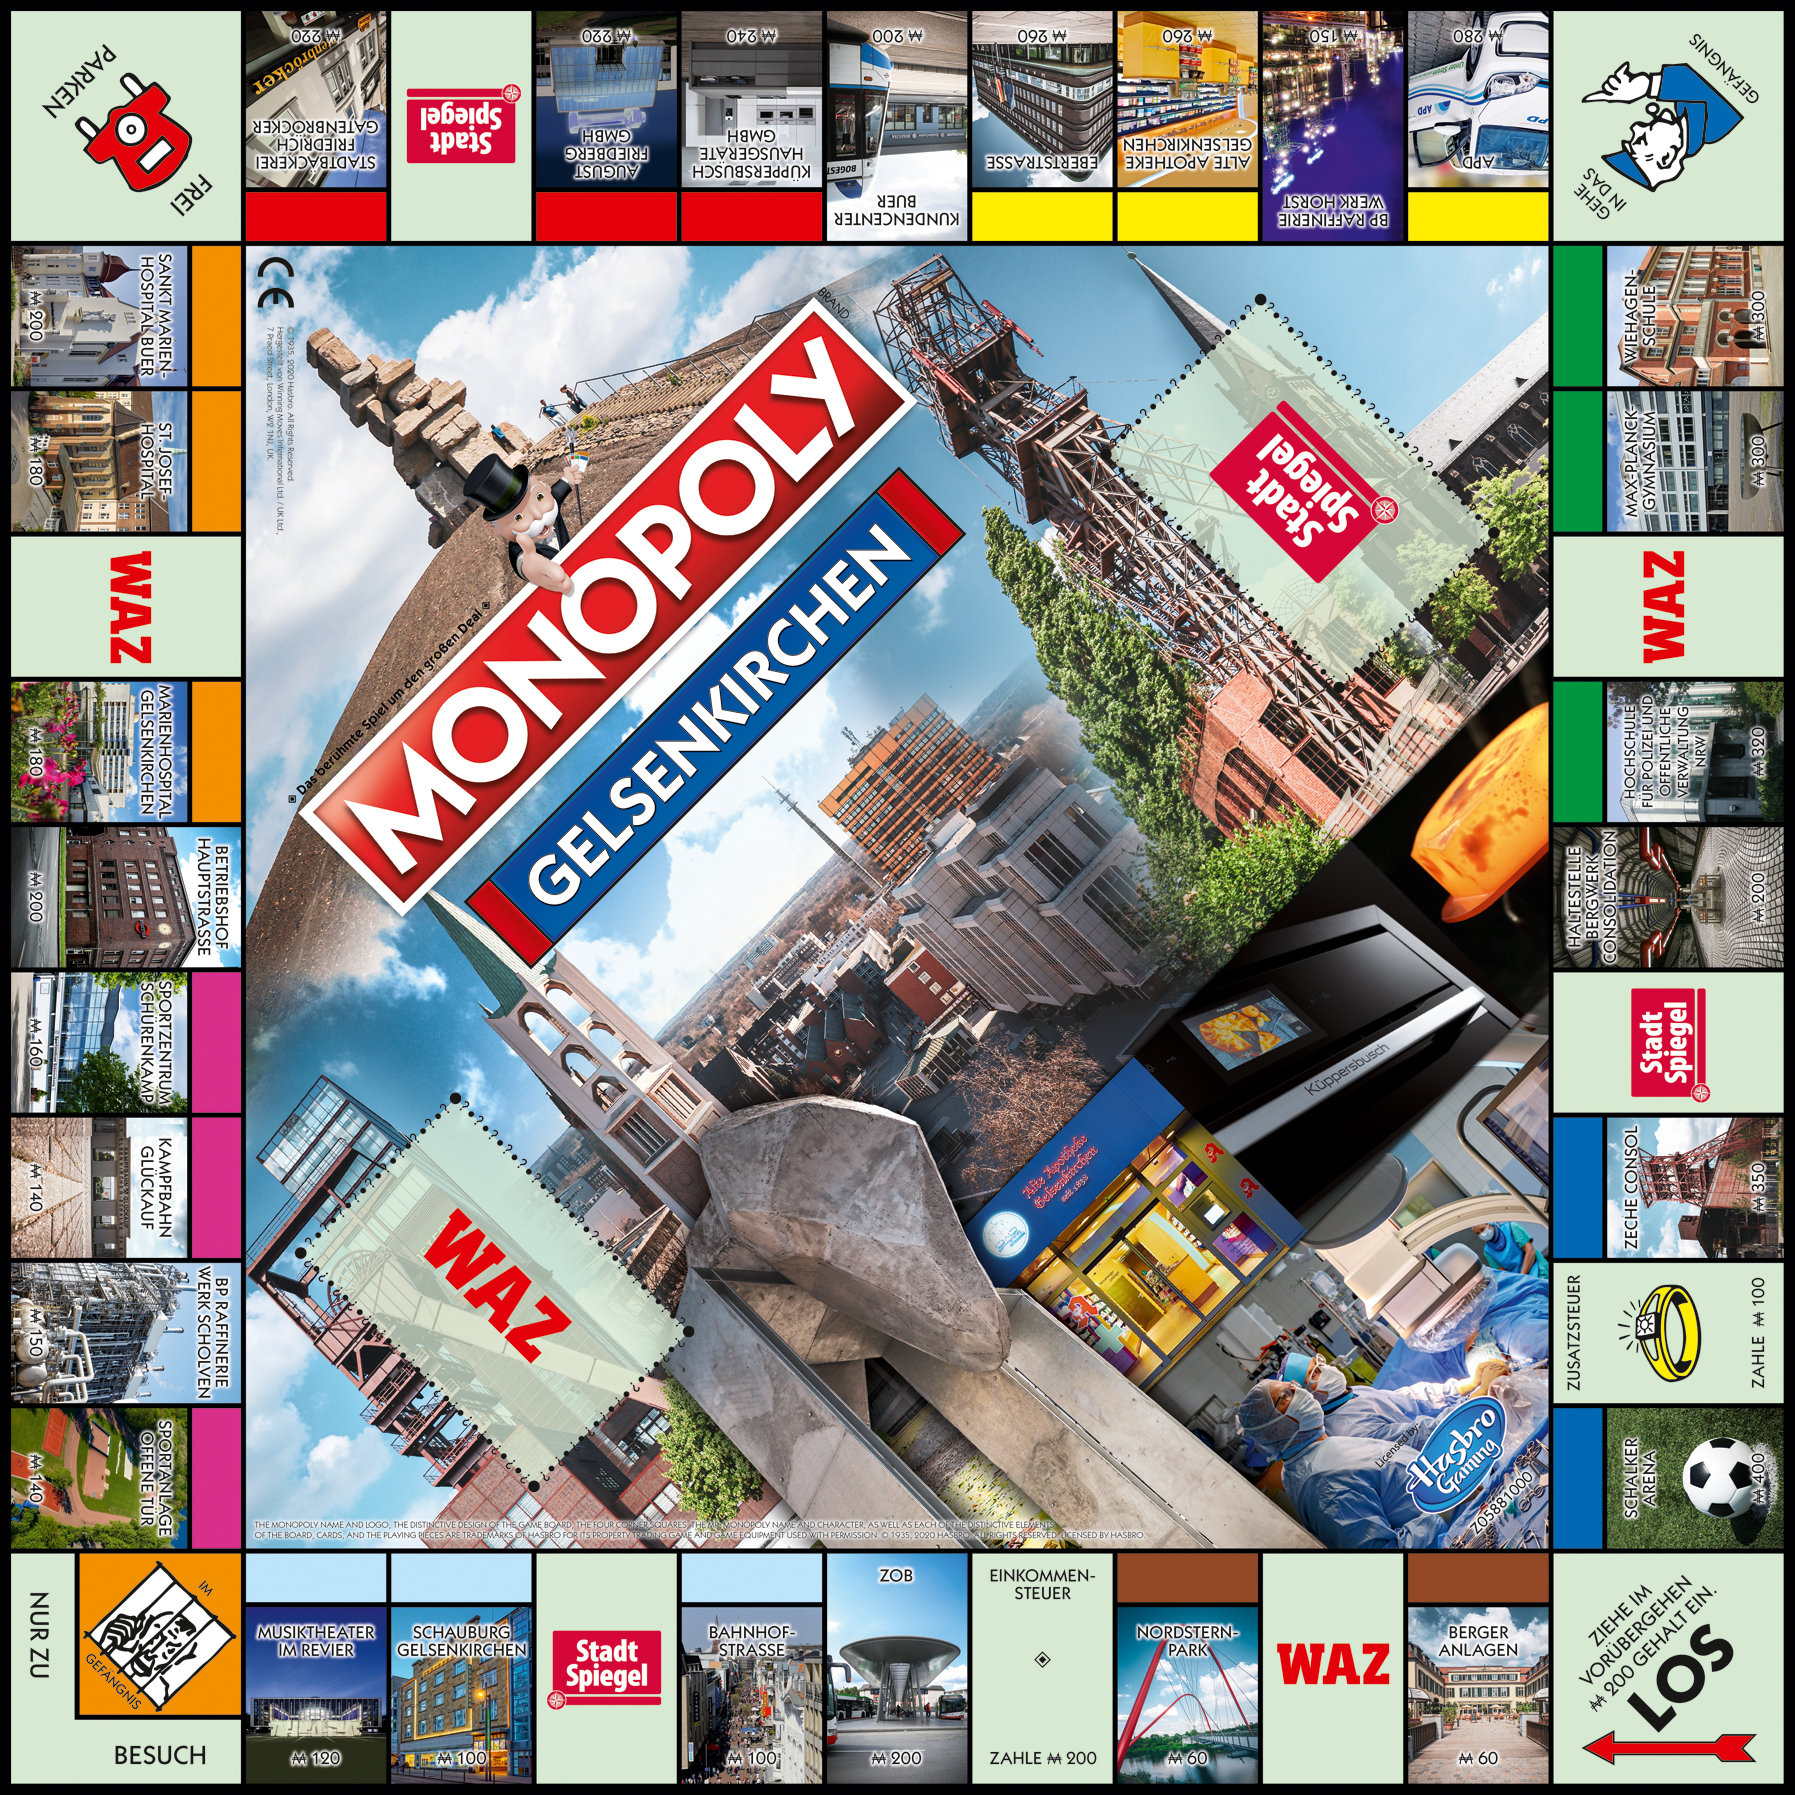 WINNING Gelsenkirchen MOVES Monopoly Brettspiel